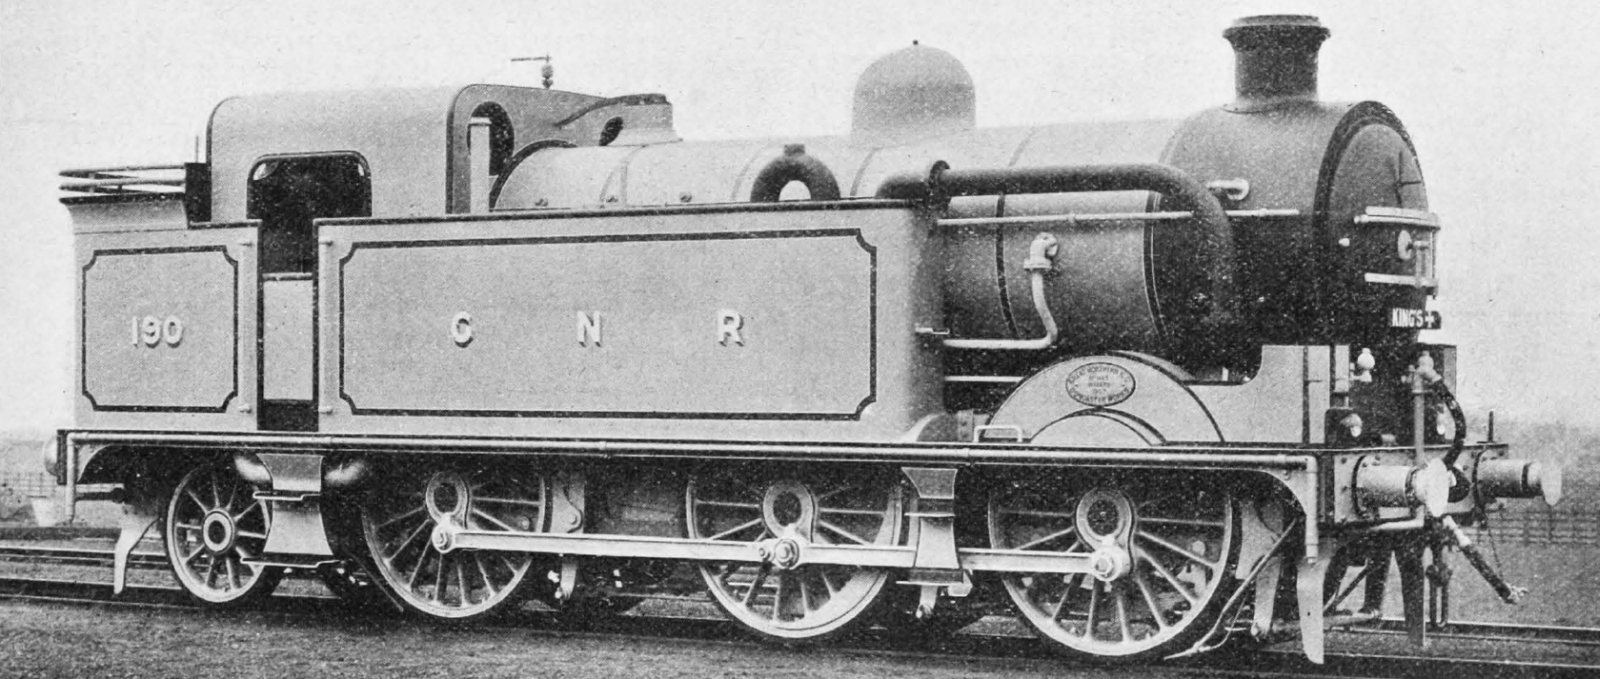 No. 190 as built